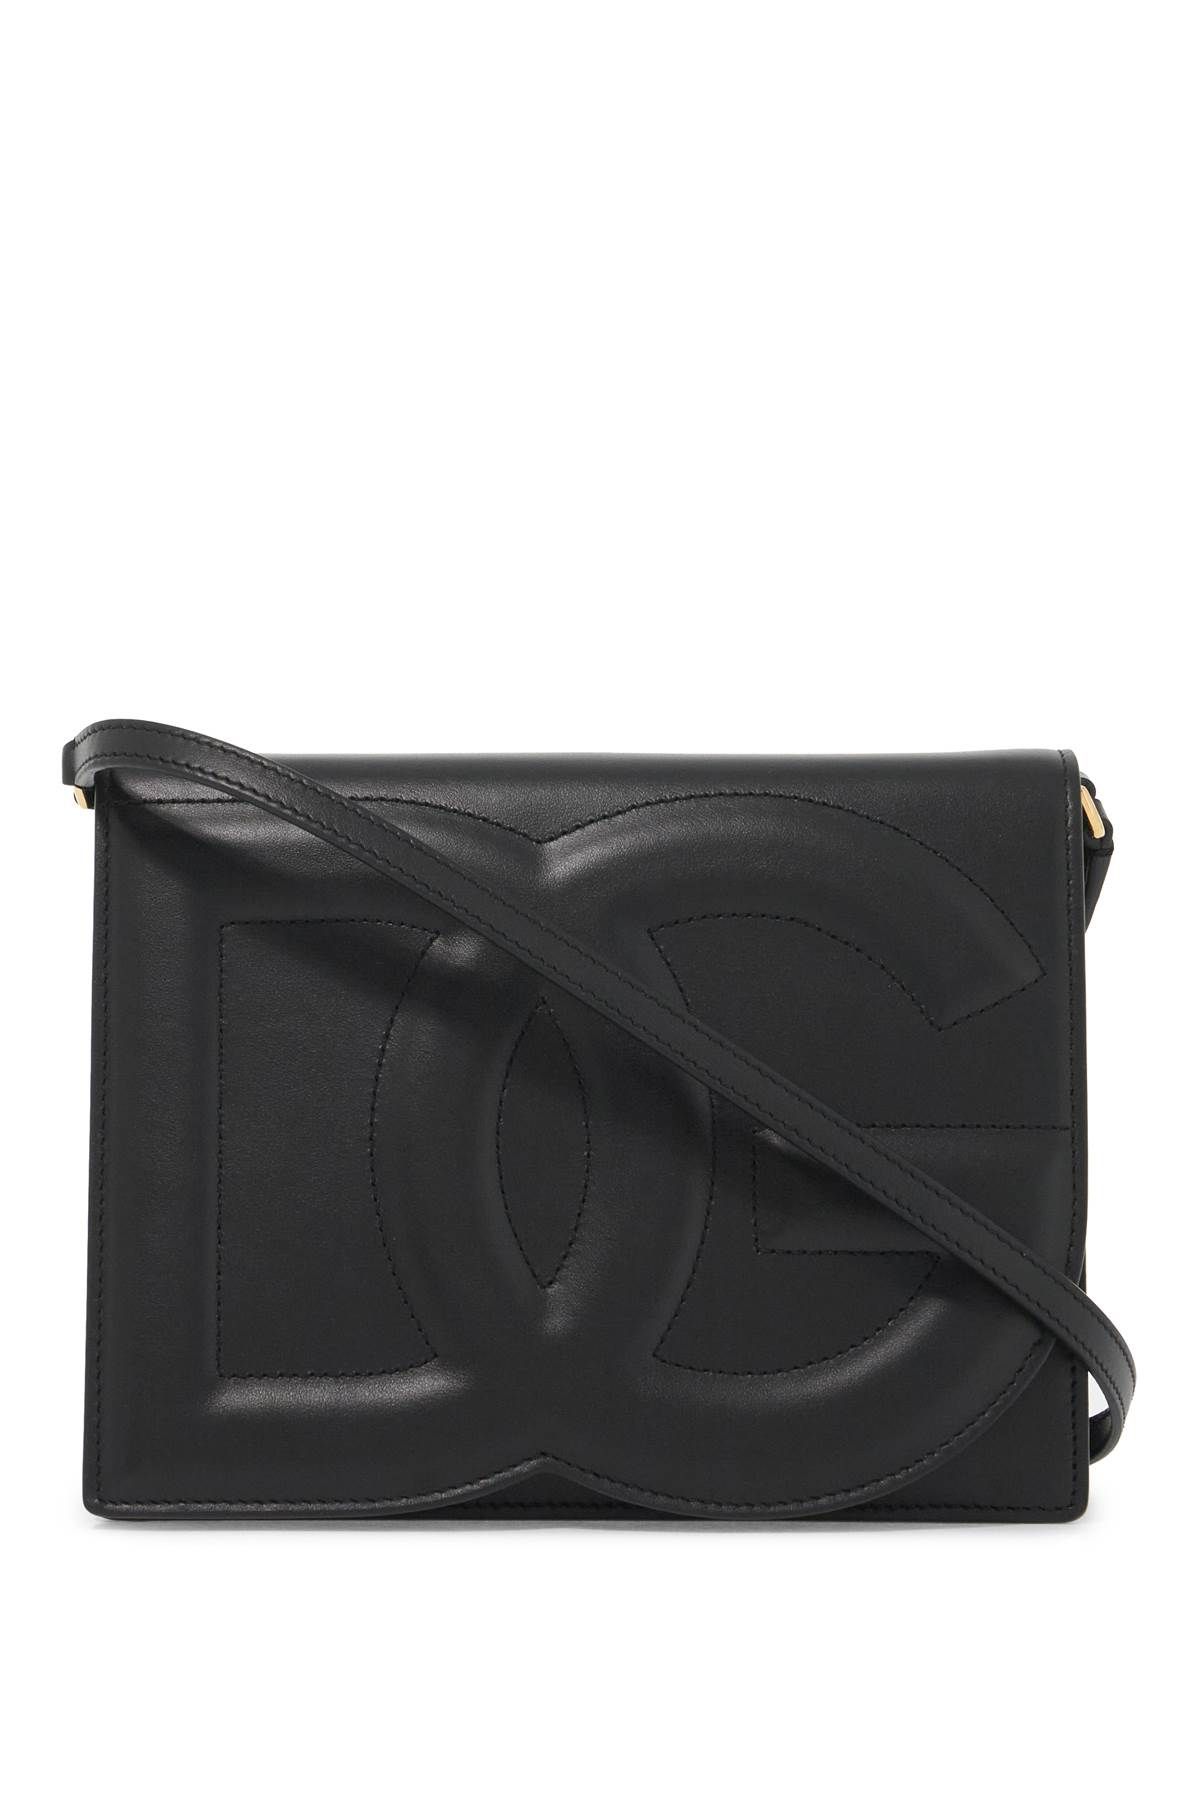 Dolce & Gabbana DOLCE & GABBANA leather dg logo crossbody bag